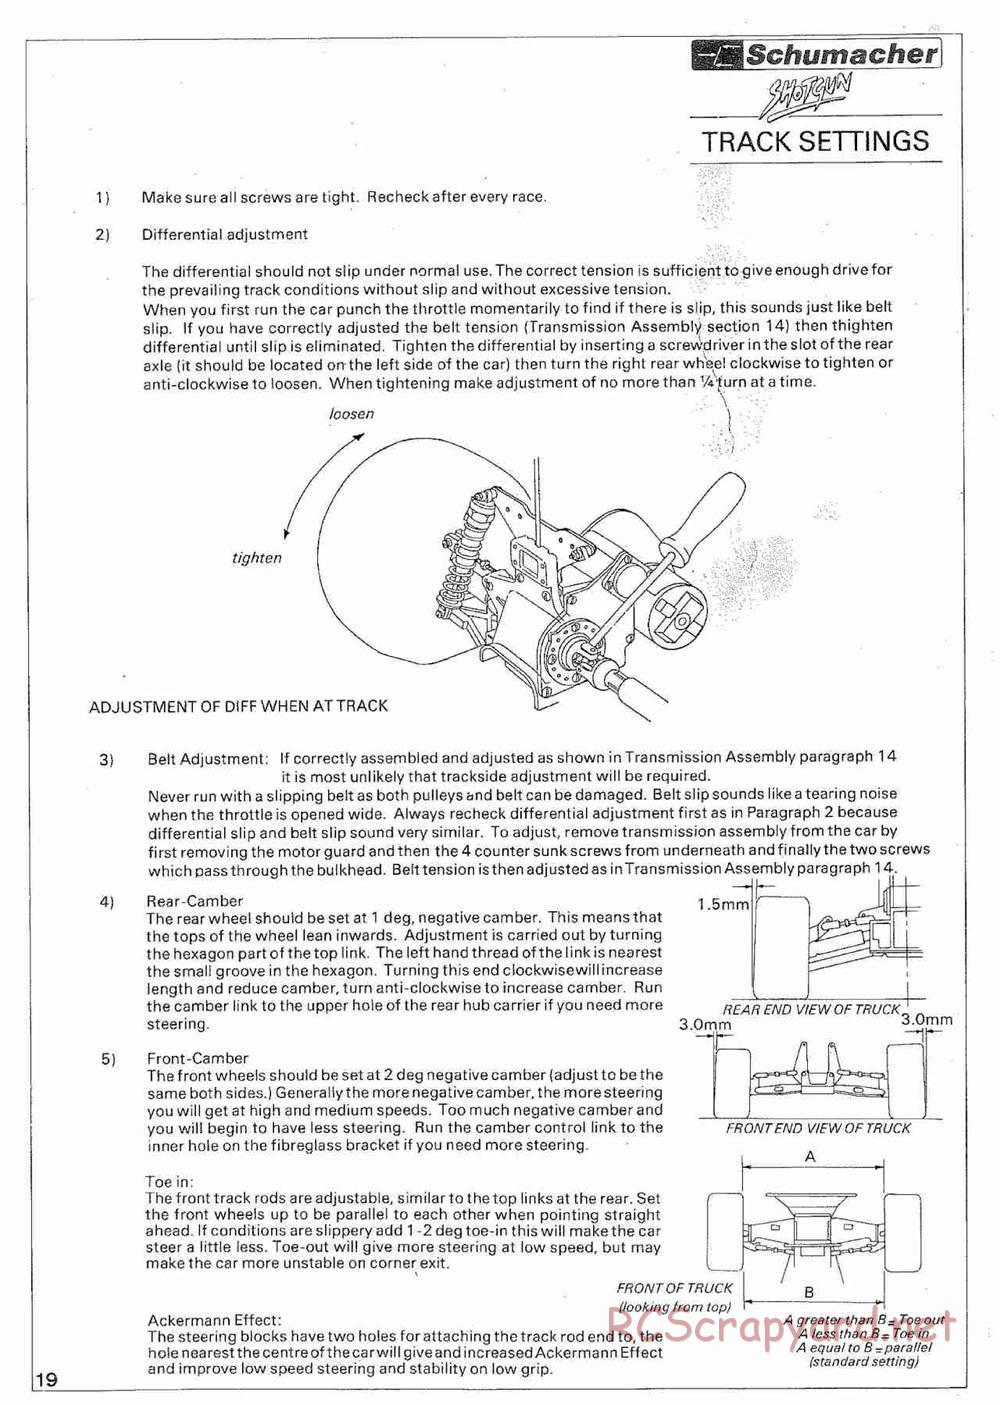 Schumacher - Shotgun - Manual - Page 24